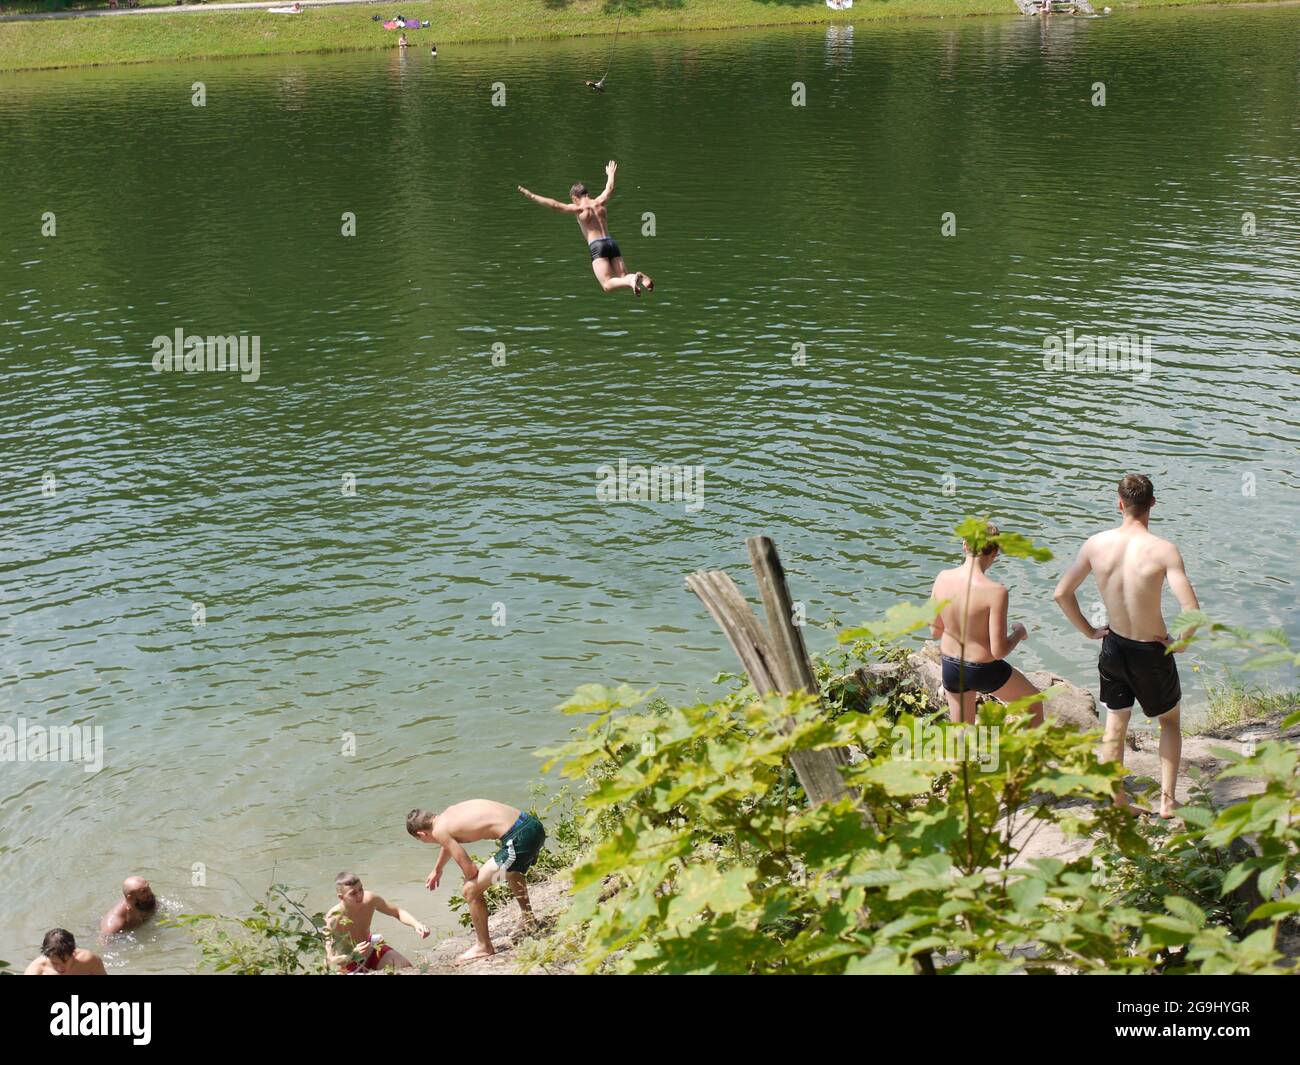 Un homme volant tout en nageant dans l'un des lacs de Kiev, Ukraine Banque D'Images